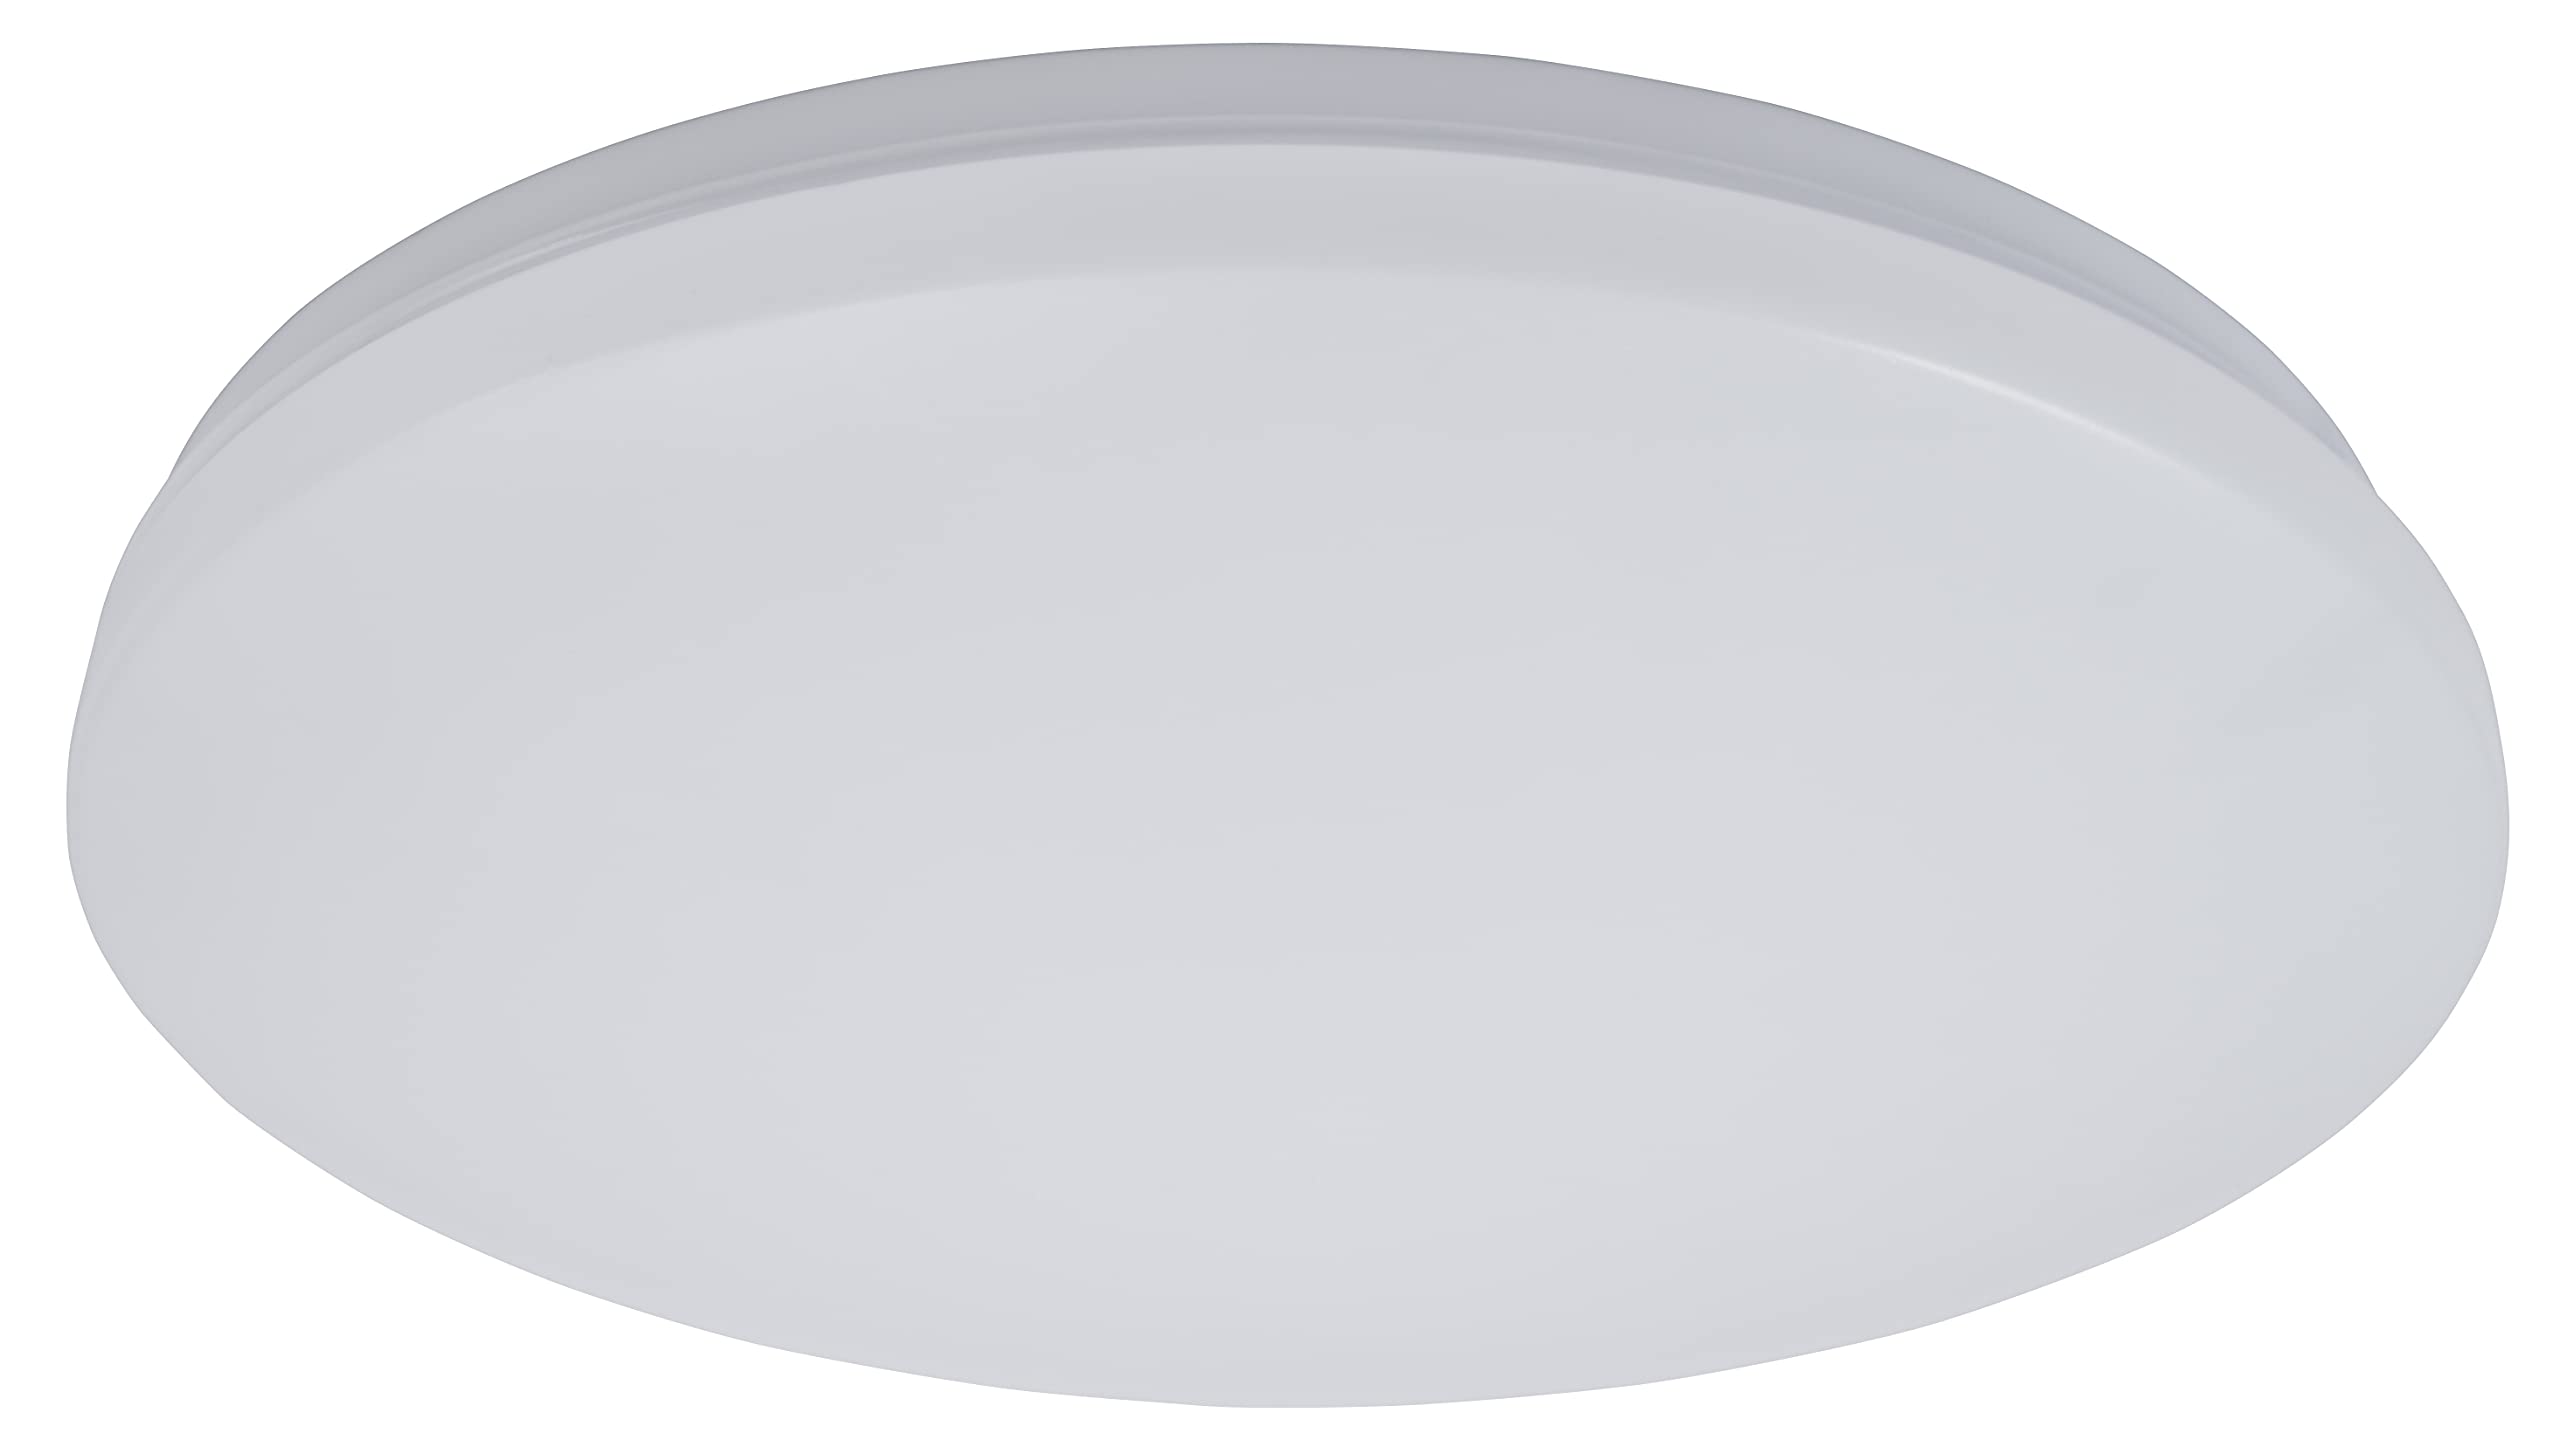 McShine - Deckenleuchte LED Deckenlampe mit Bewegungsmelder | illumi | 18W, 1.440 lm, Ø33cm, warmweiß, 3000K, Licht für Werkstatt, Keller, Garage, Schuppen, Dachboden